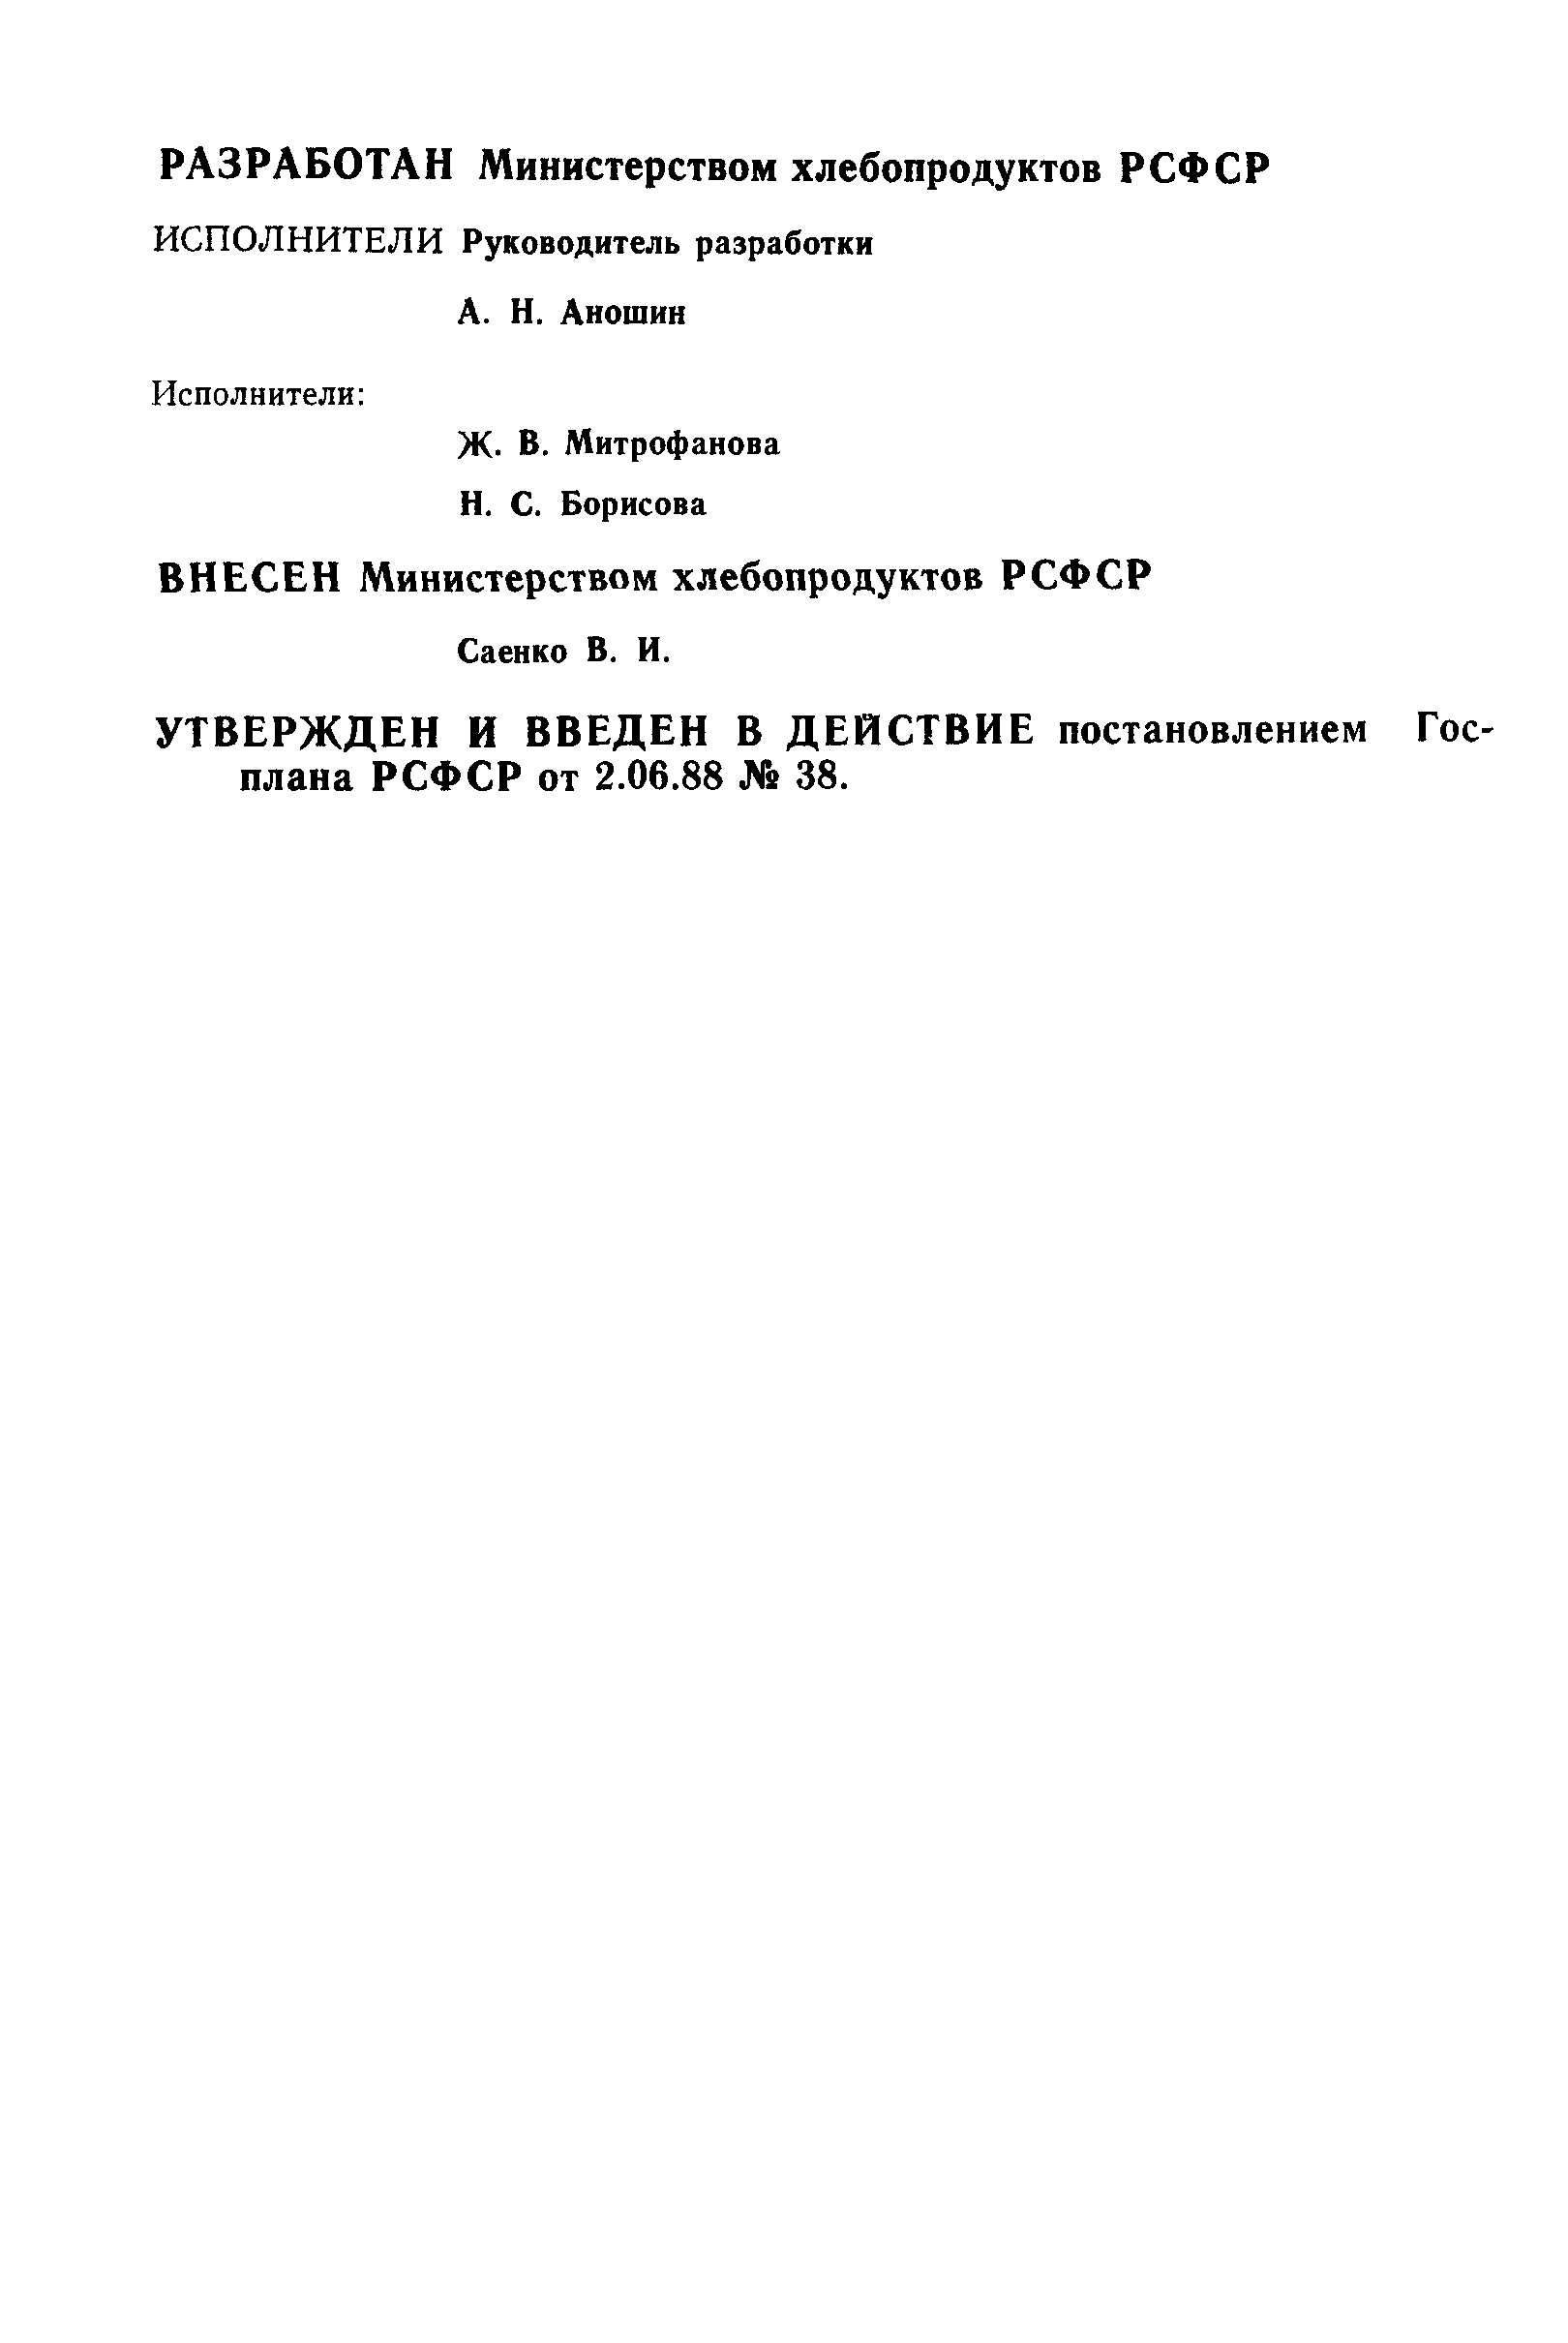 РСТ РСФСР 581-88